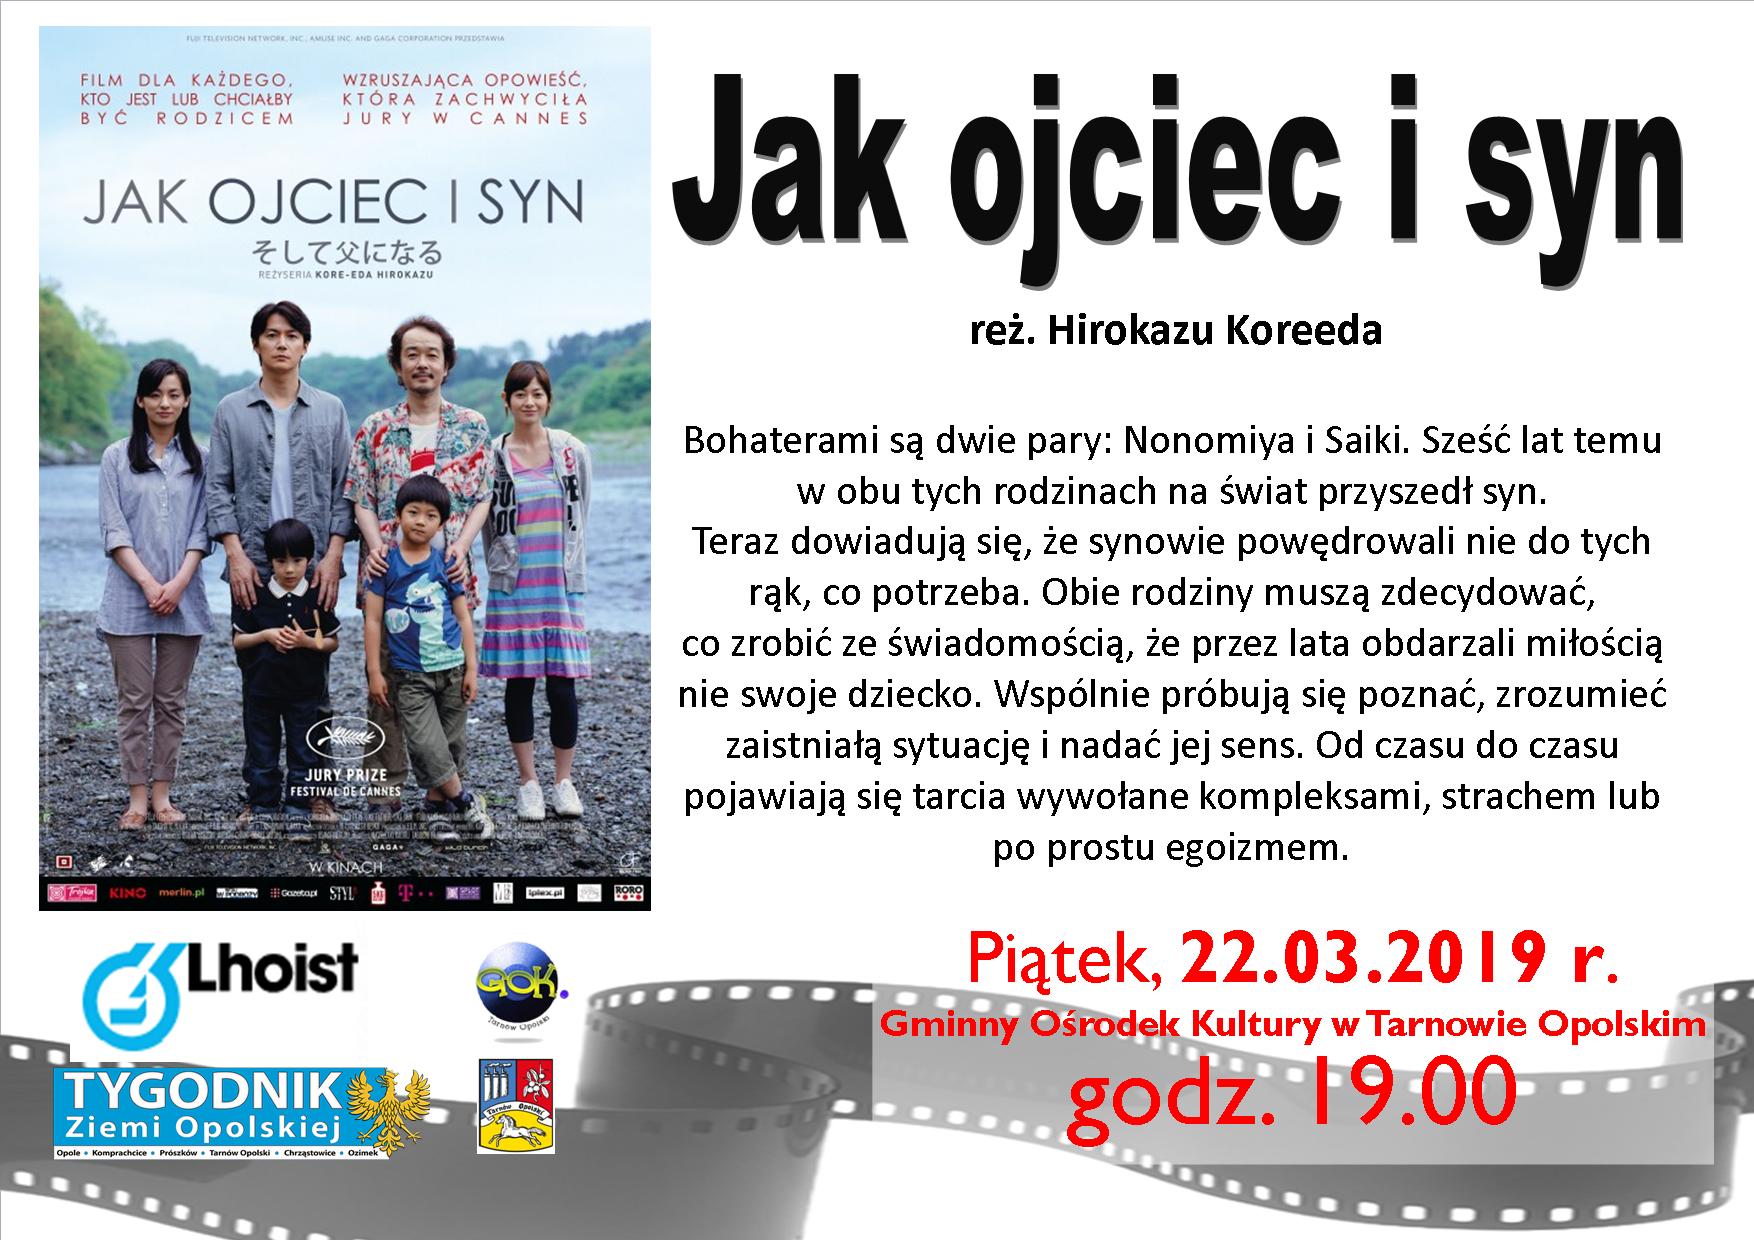 Dyskusyjny Klub Filmowy w Tarnowie Opolskim zaprasza w marcu